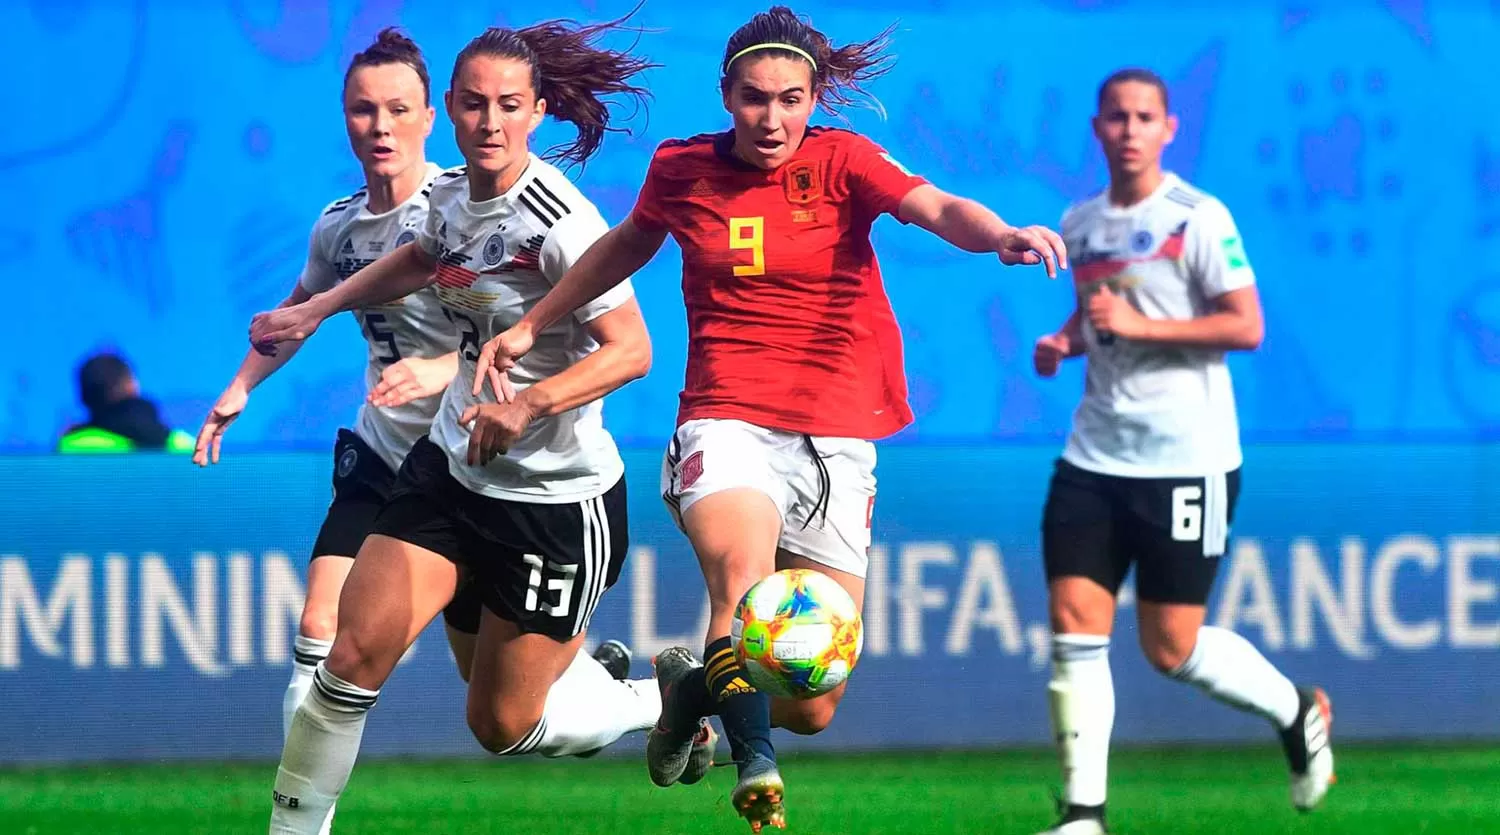 Sigue el Mundial de fútbol femenino: hora, TV y el resto de la agenda deportiva